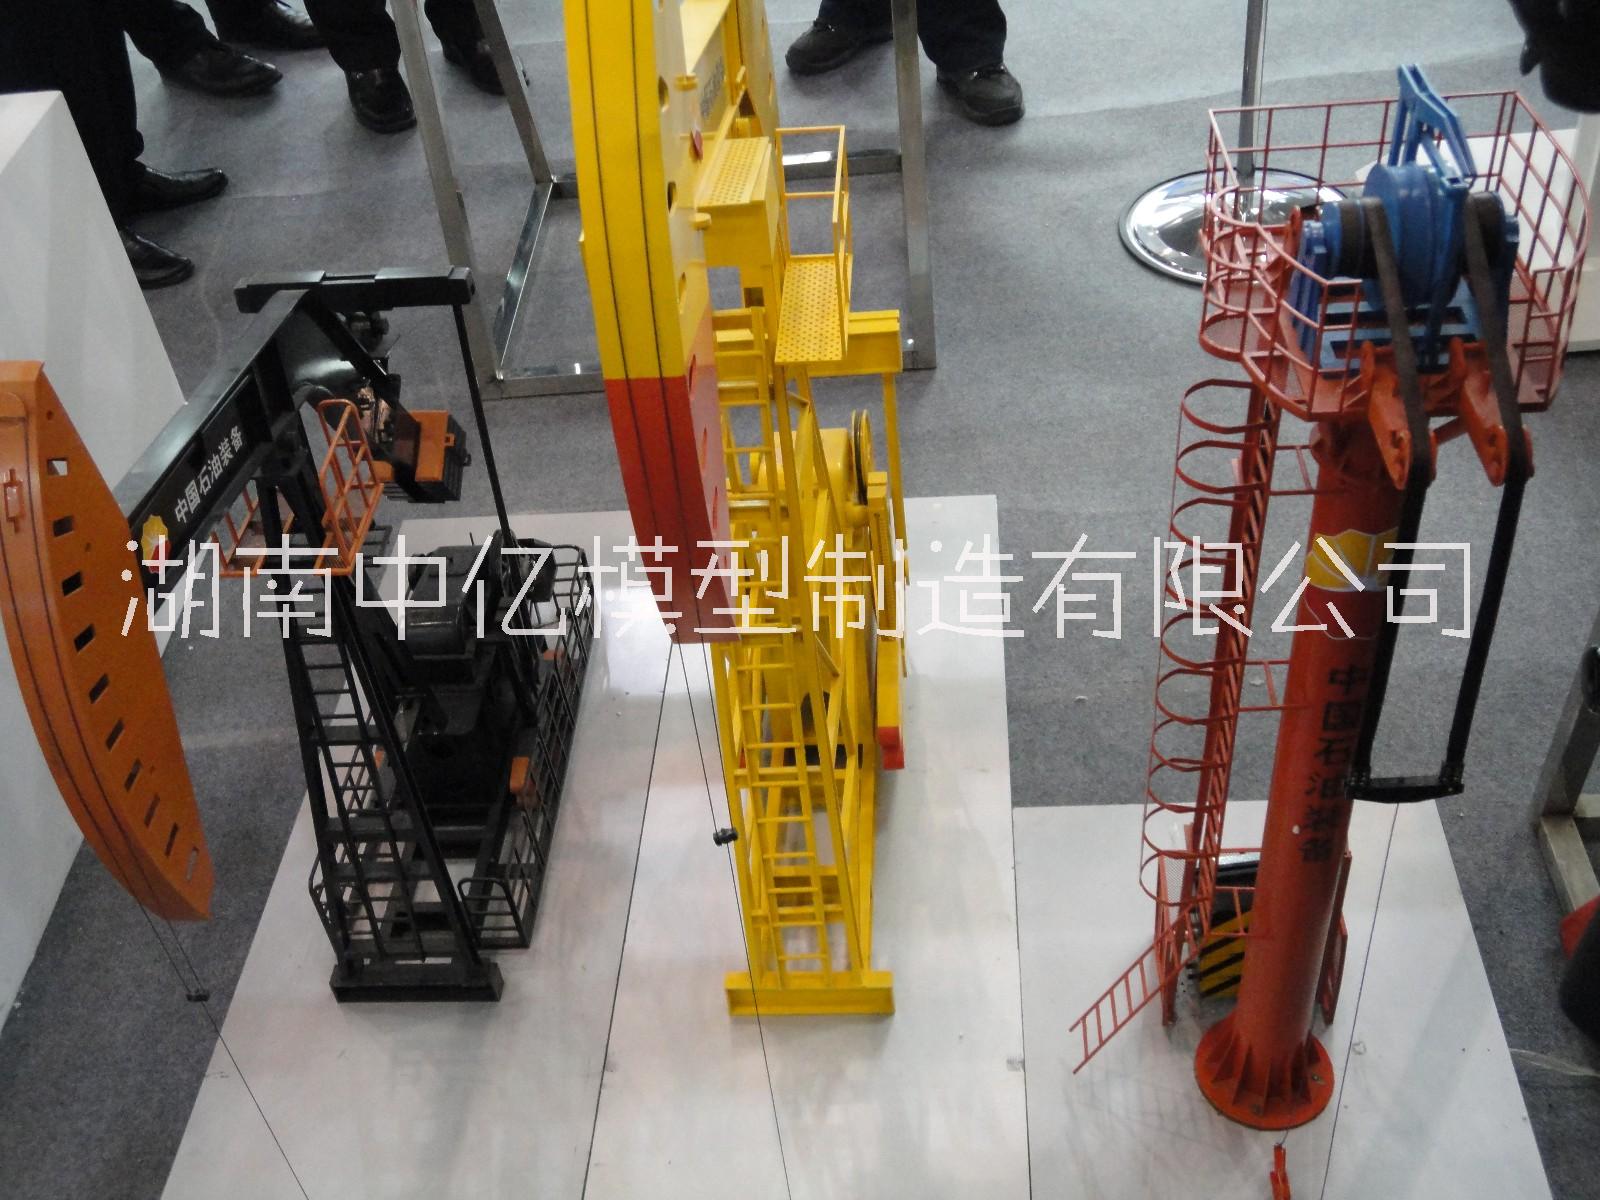 上海定制-防喷器模型、井口装置模上海定制-防喷器模型、井口装置模型